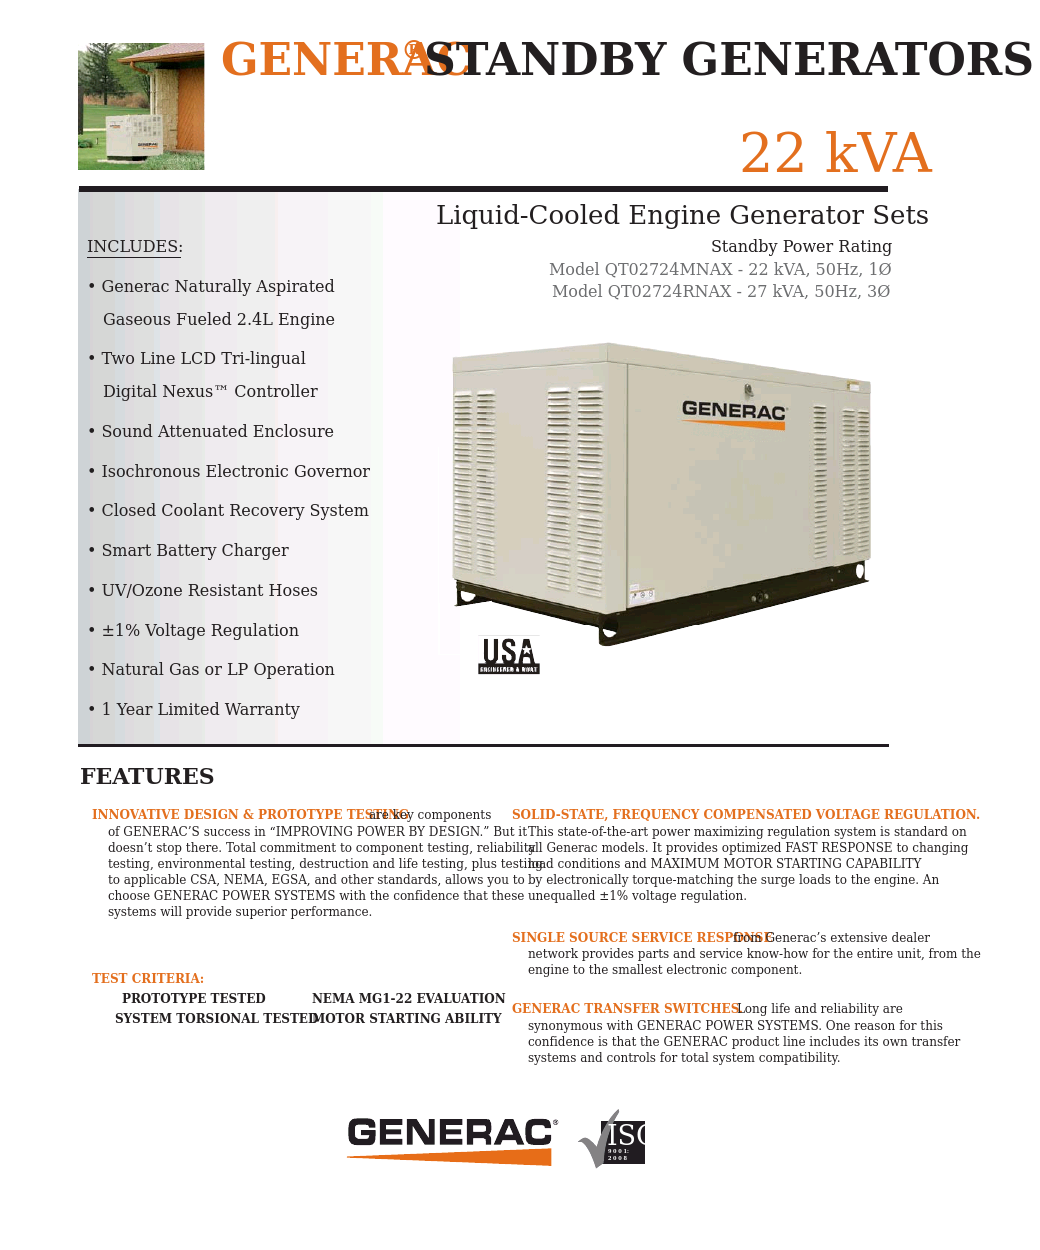 Liquid-Cooled Engine Generator Sets Model QT02724MNAX - 22 kVA